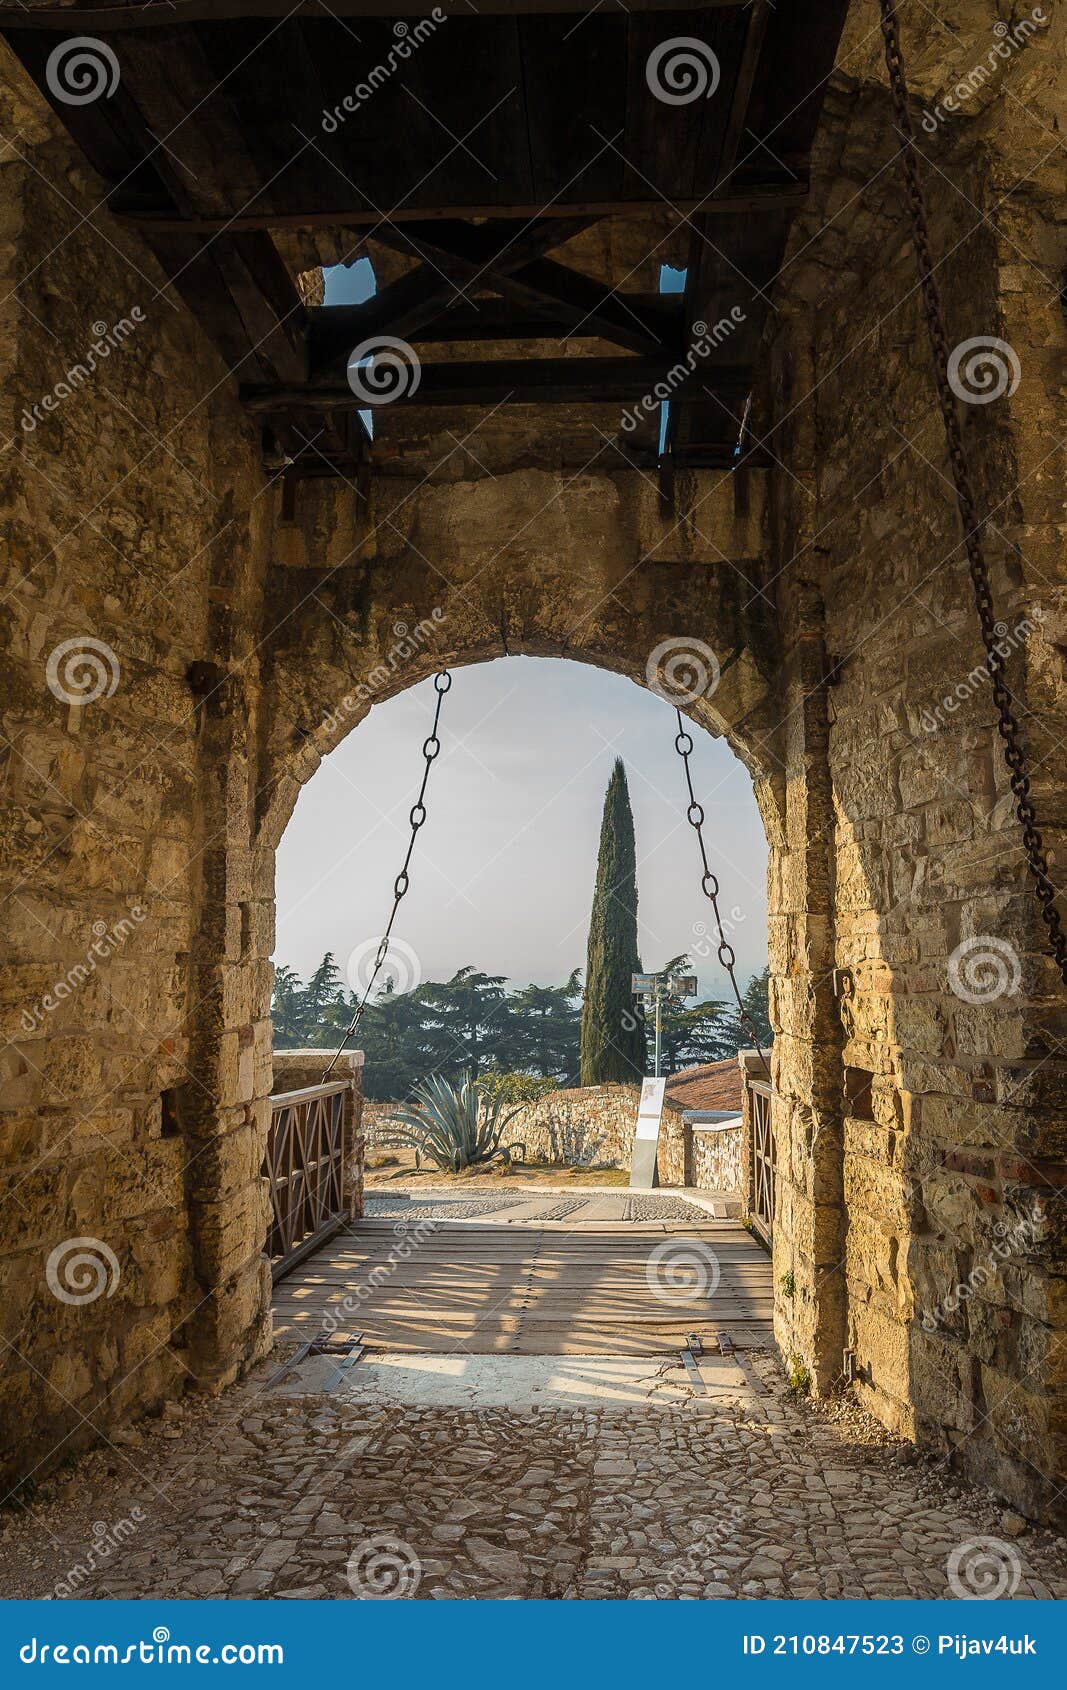 drawbridge gate of medieval castle of brescia on colle cidneo